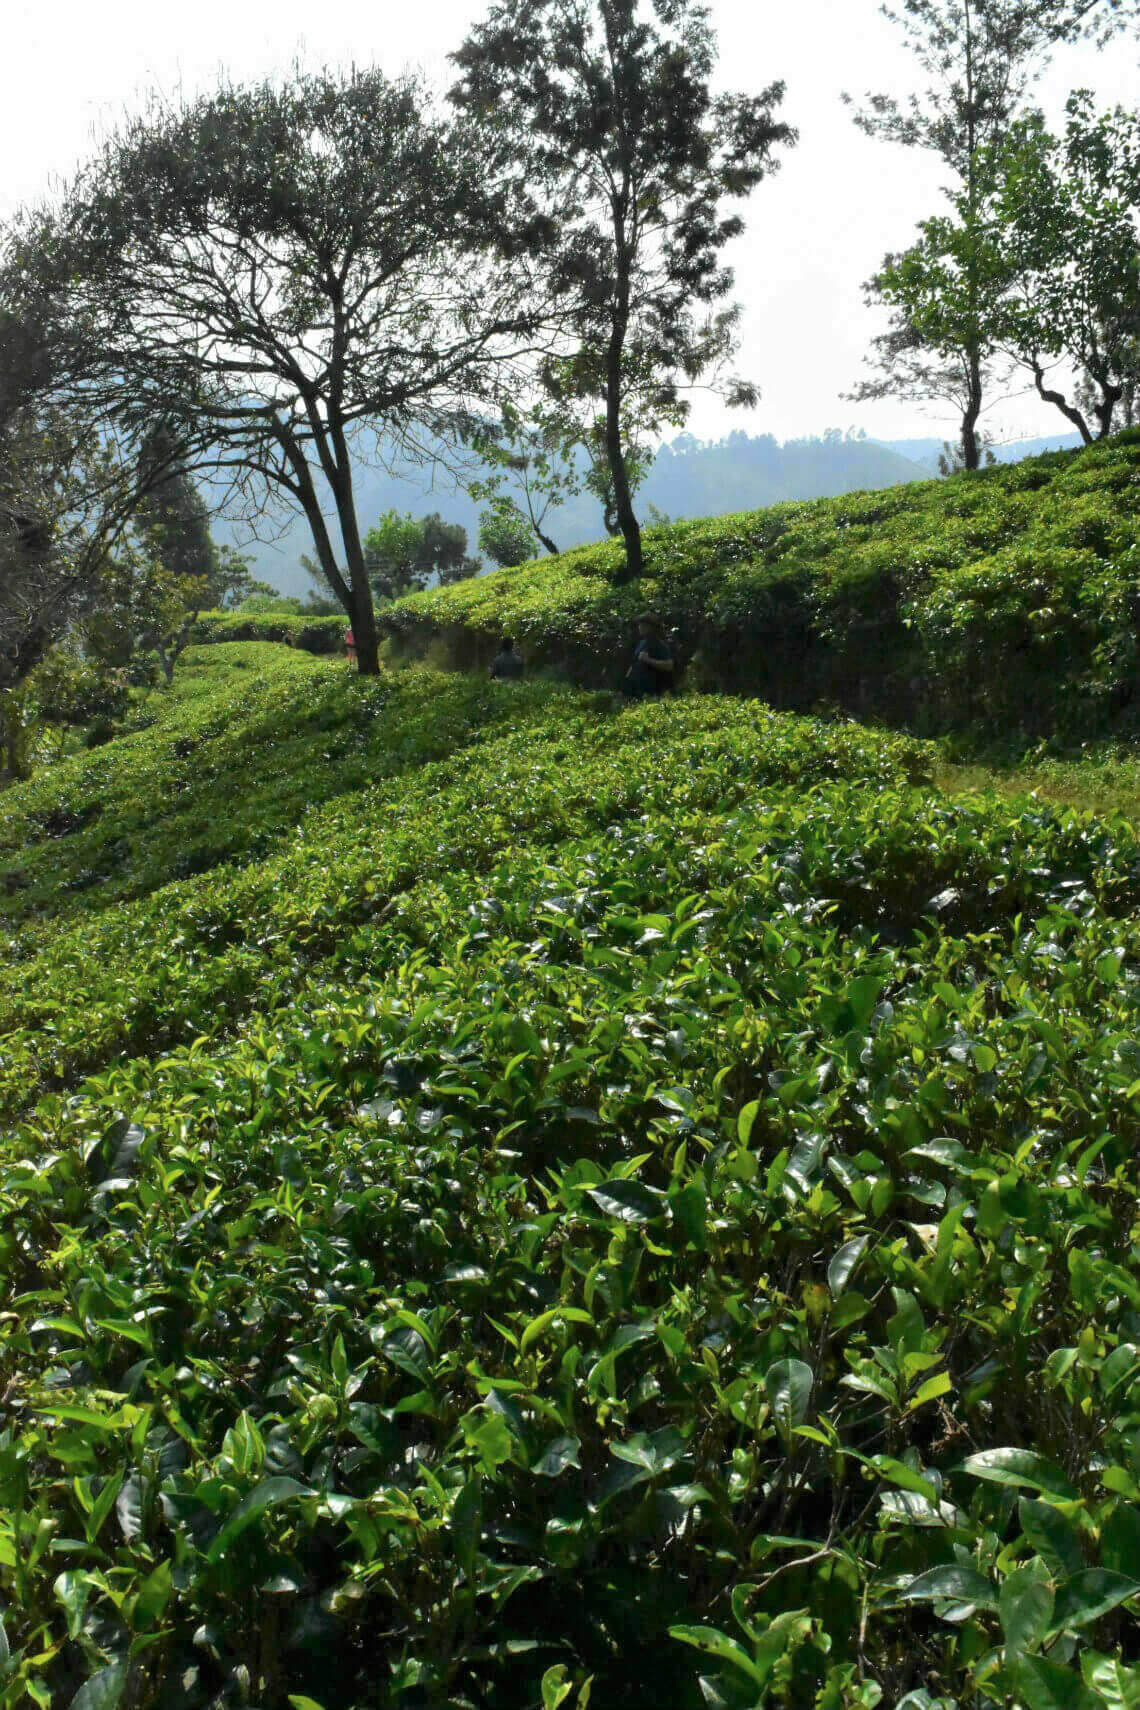 Expansive Tea Plantation